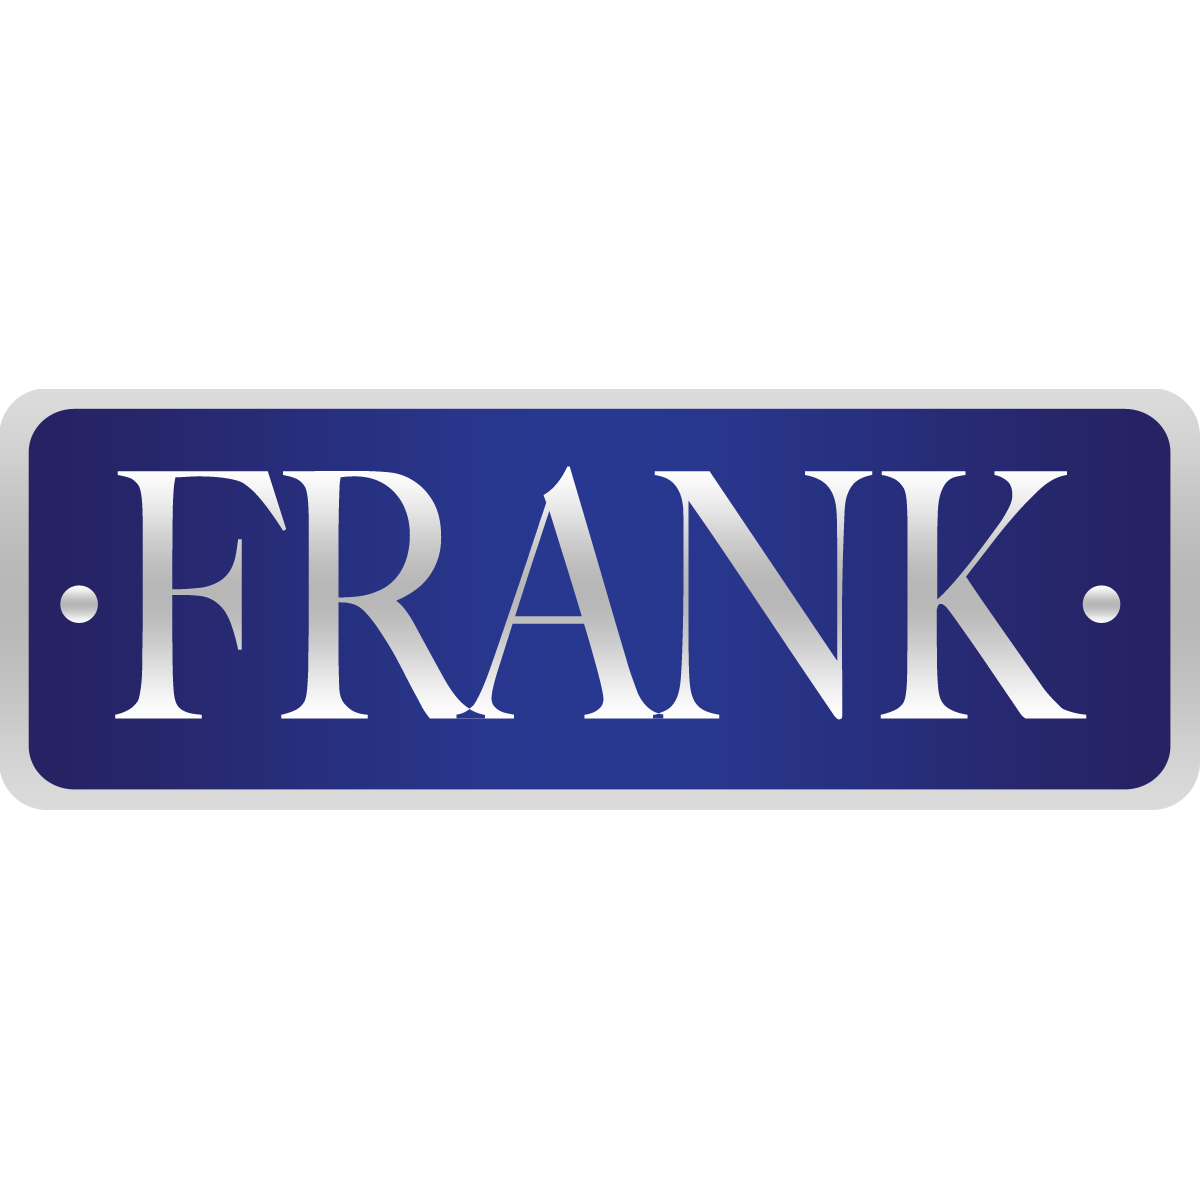 Frank Door Company